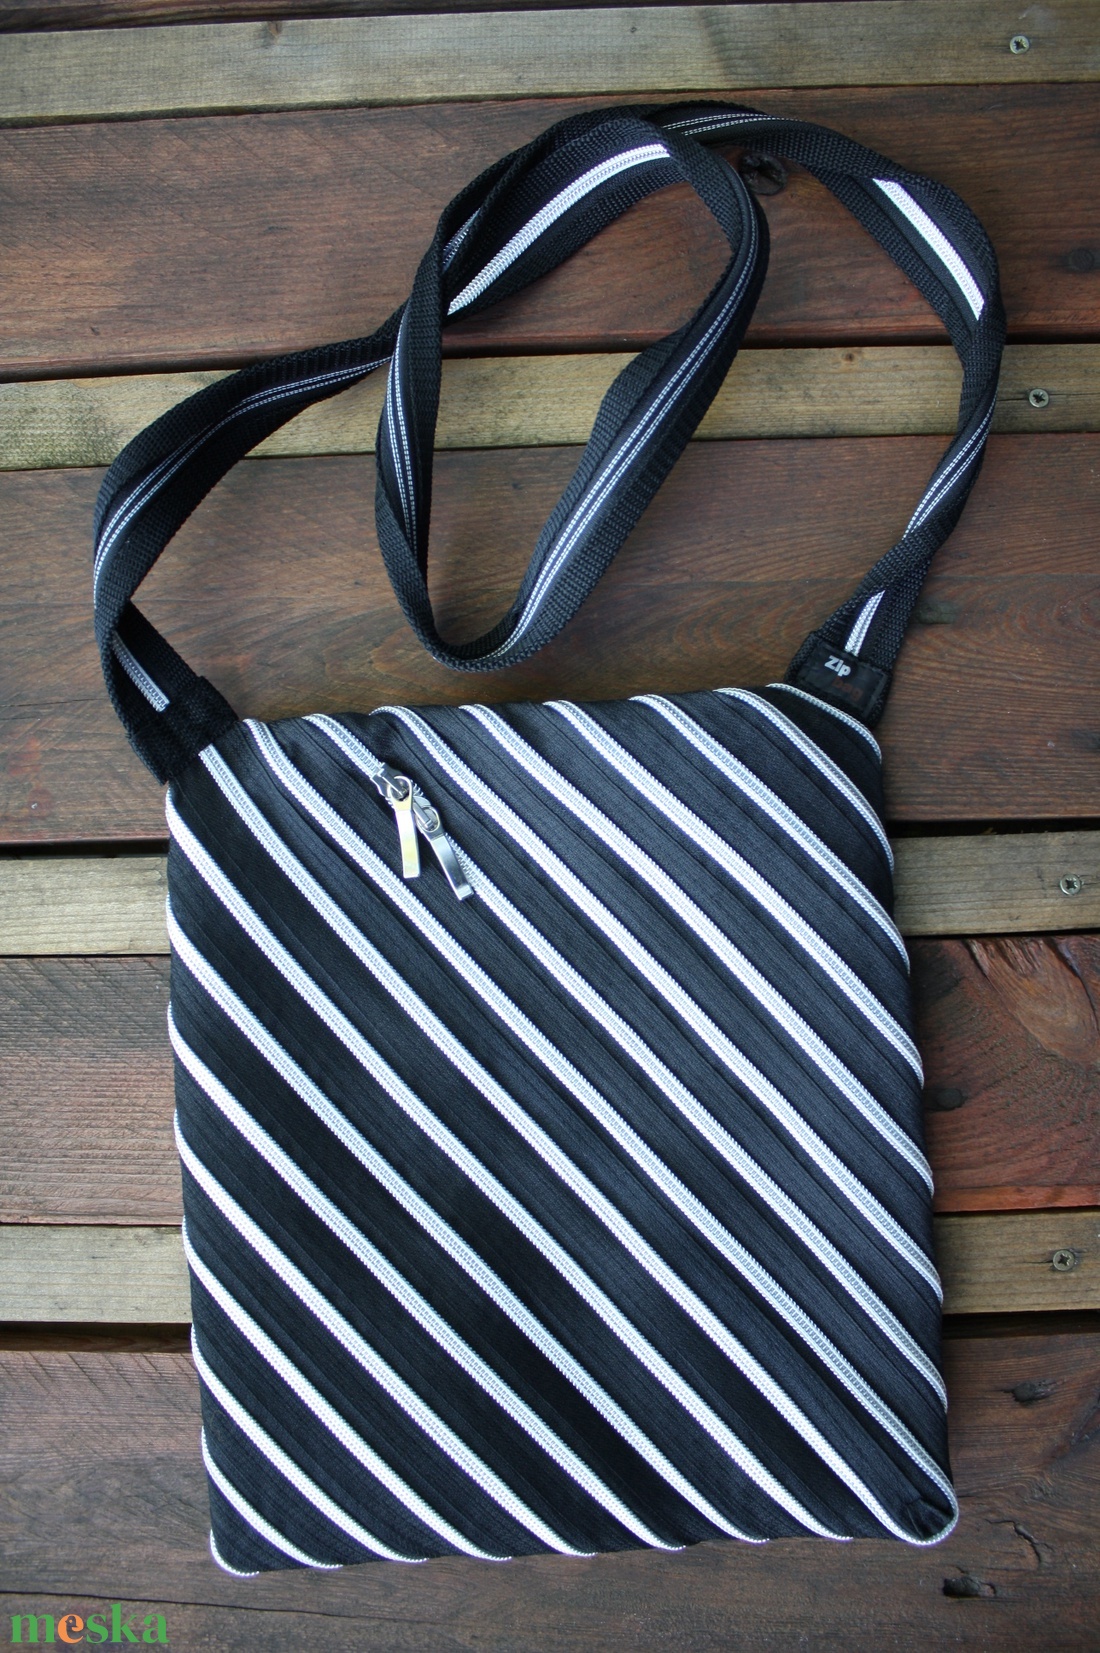 cipzártáska ezüst fekete átlós közepes - táska & tok - kézitáska & válltáska - vállon átvethető táska - Meska.hu